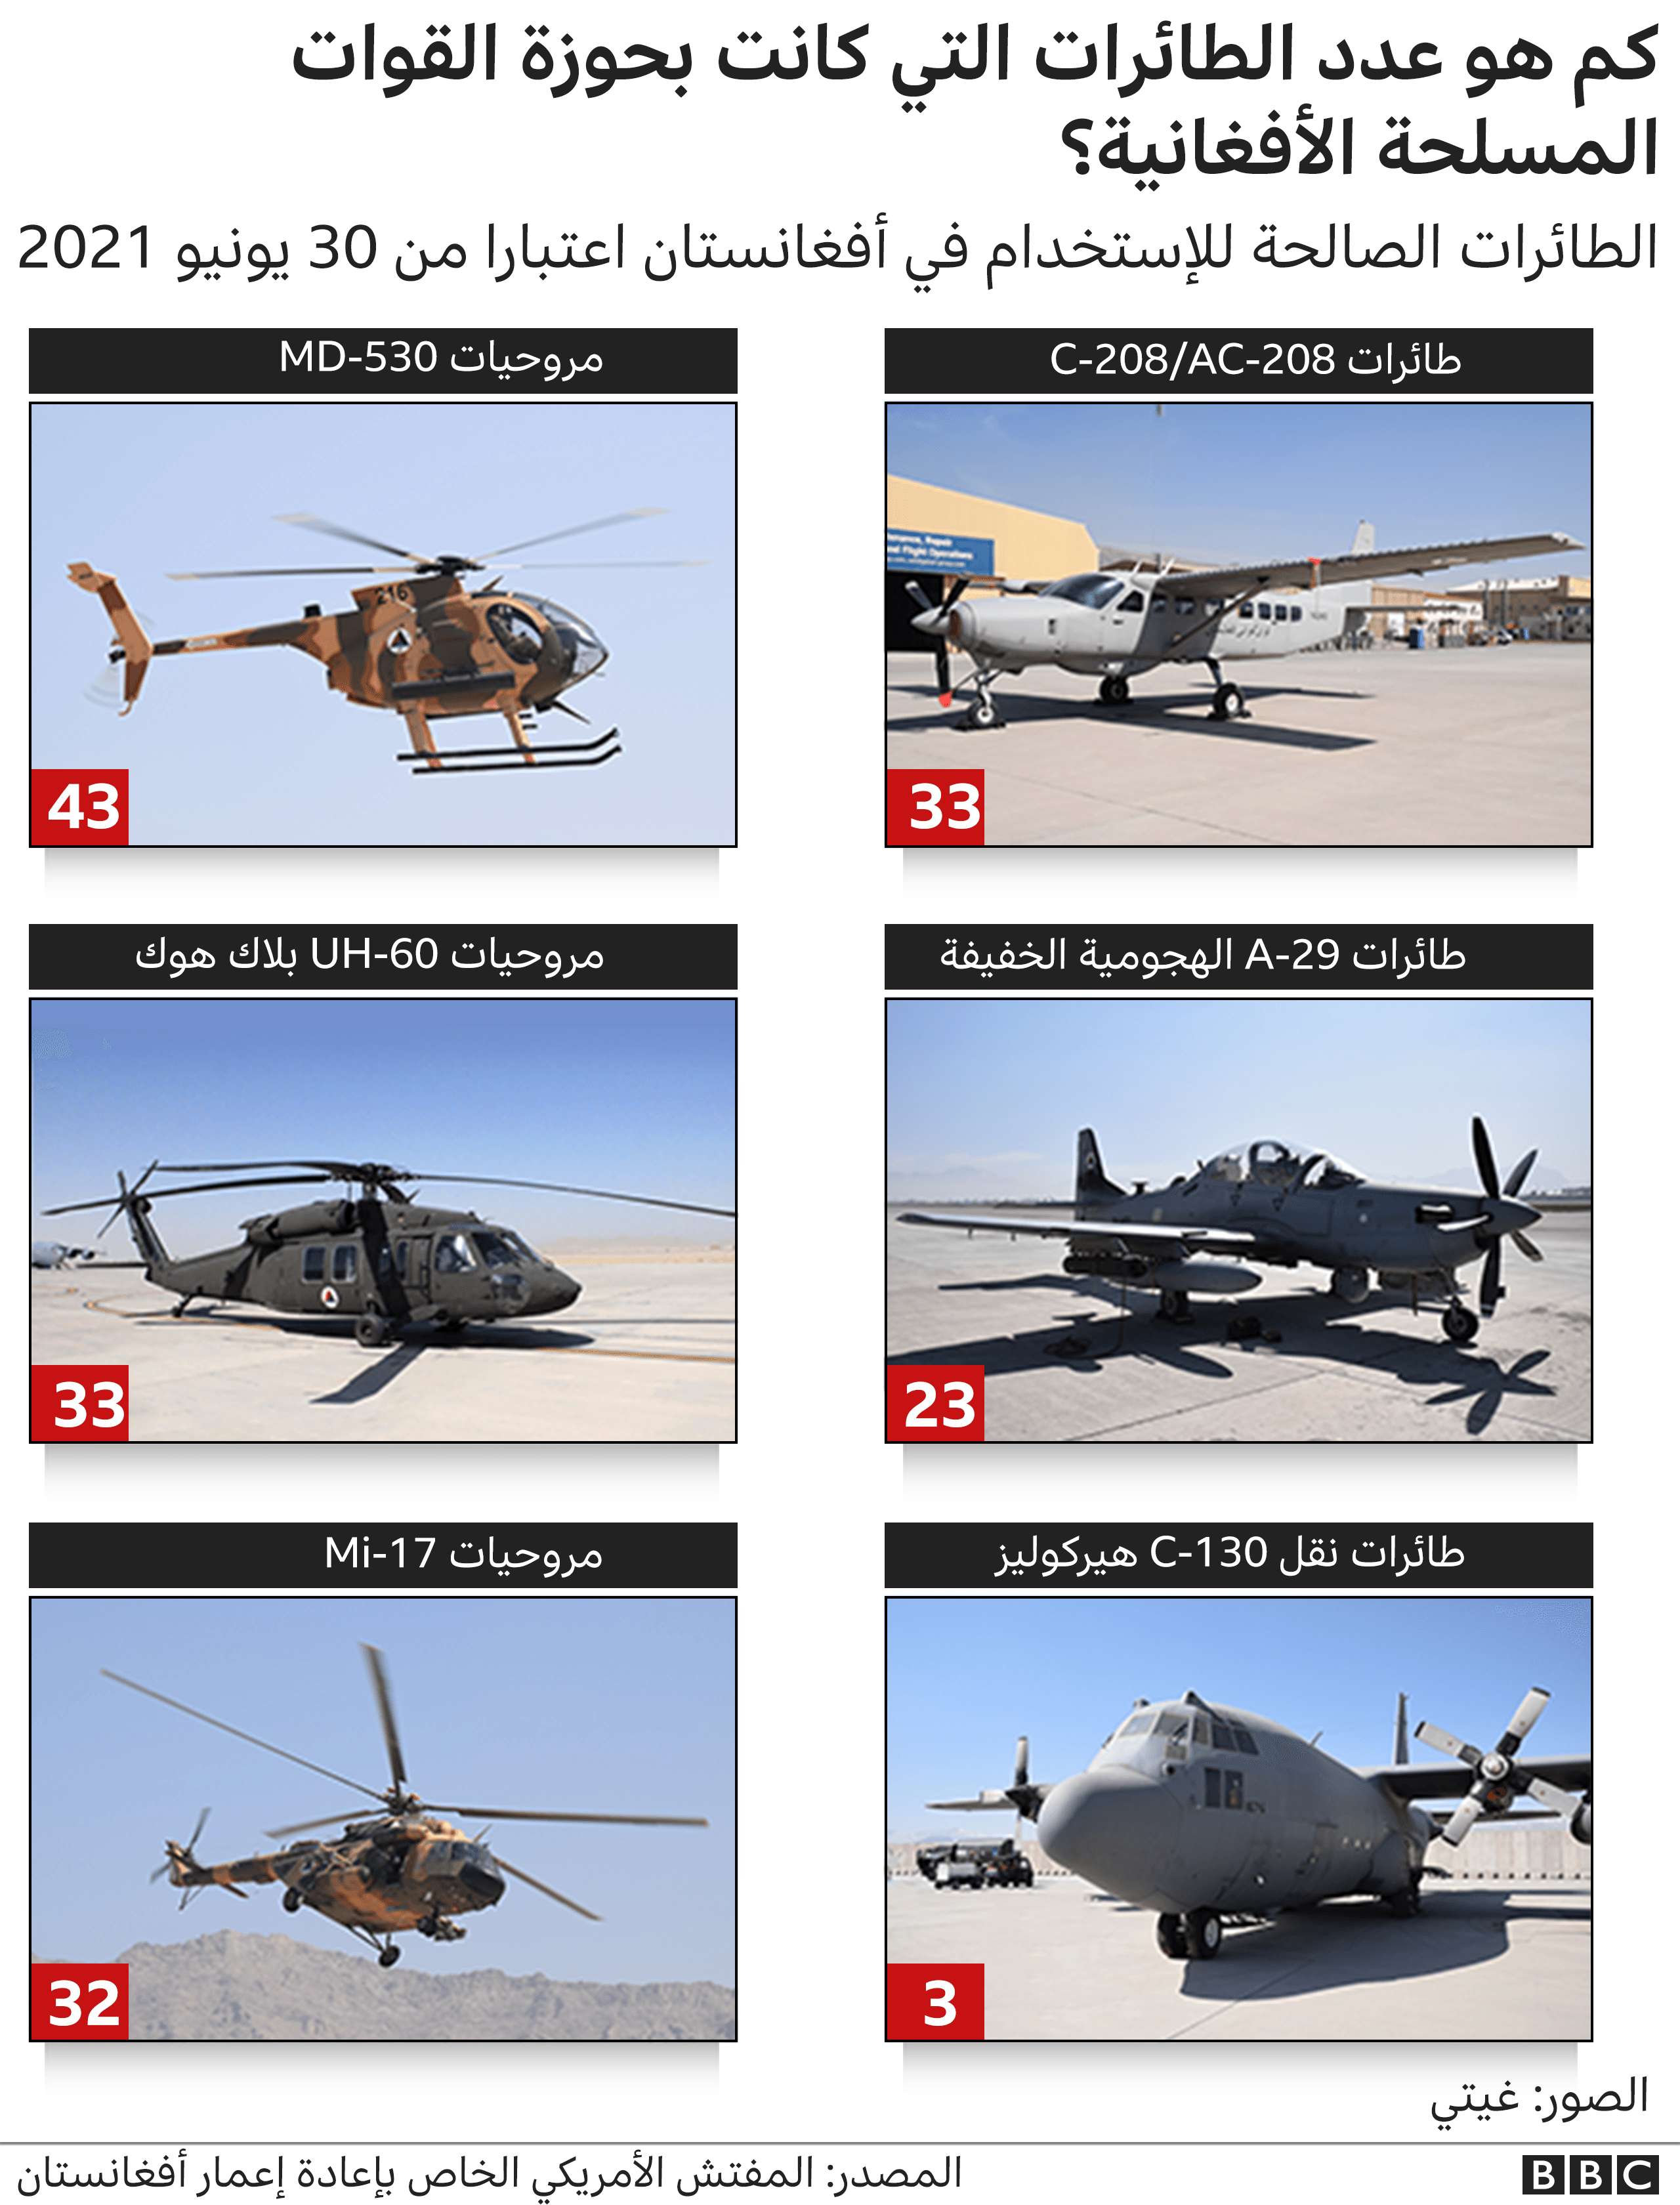 رسم غرافيك يوضح عدد الطائرات التي كانت بحوزة القوات المسلحة الأفغانية